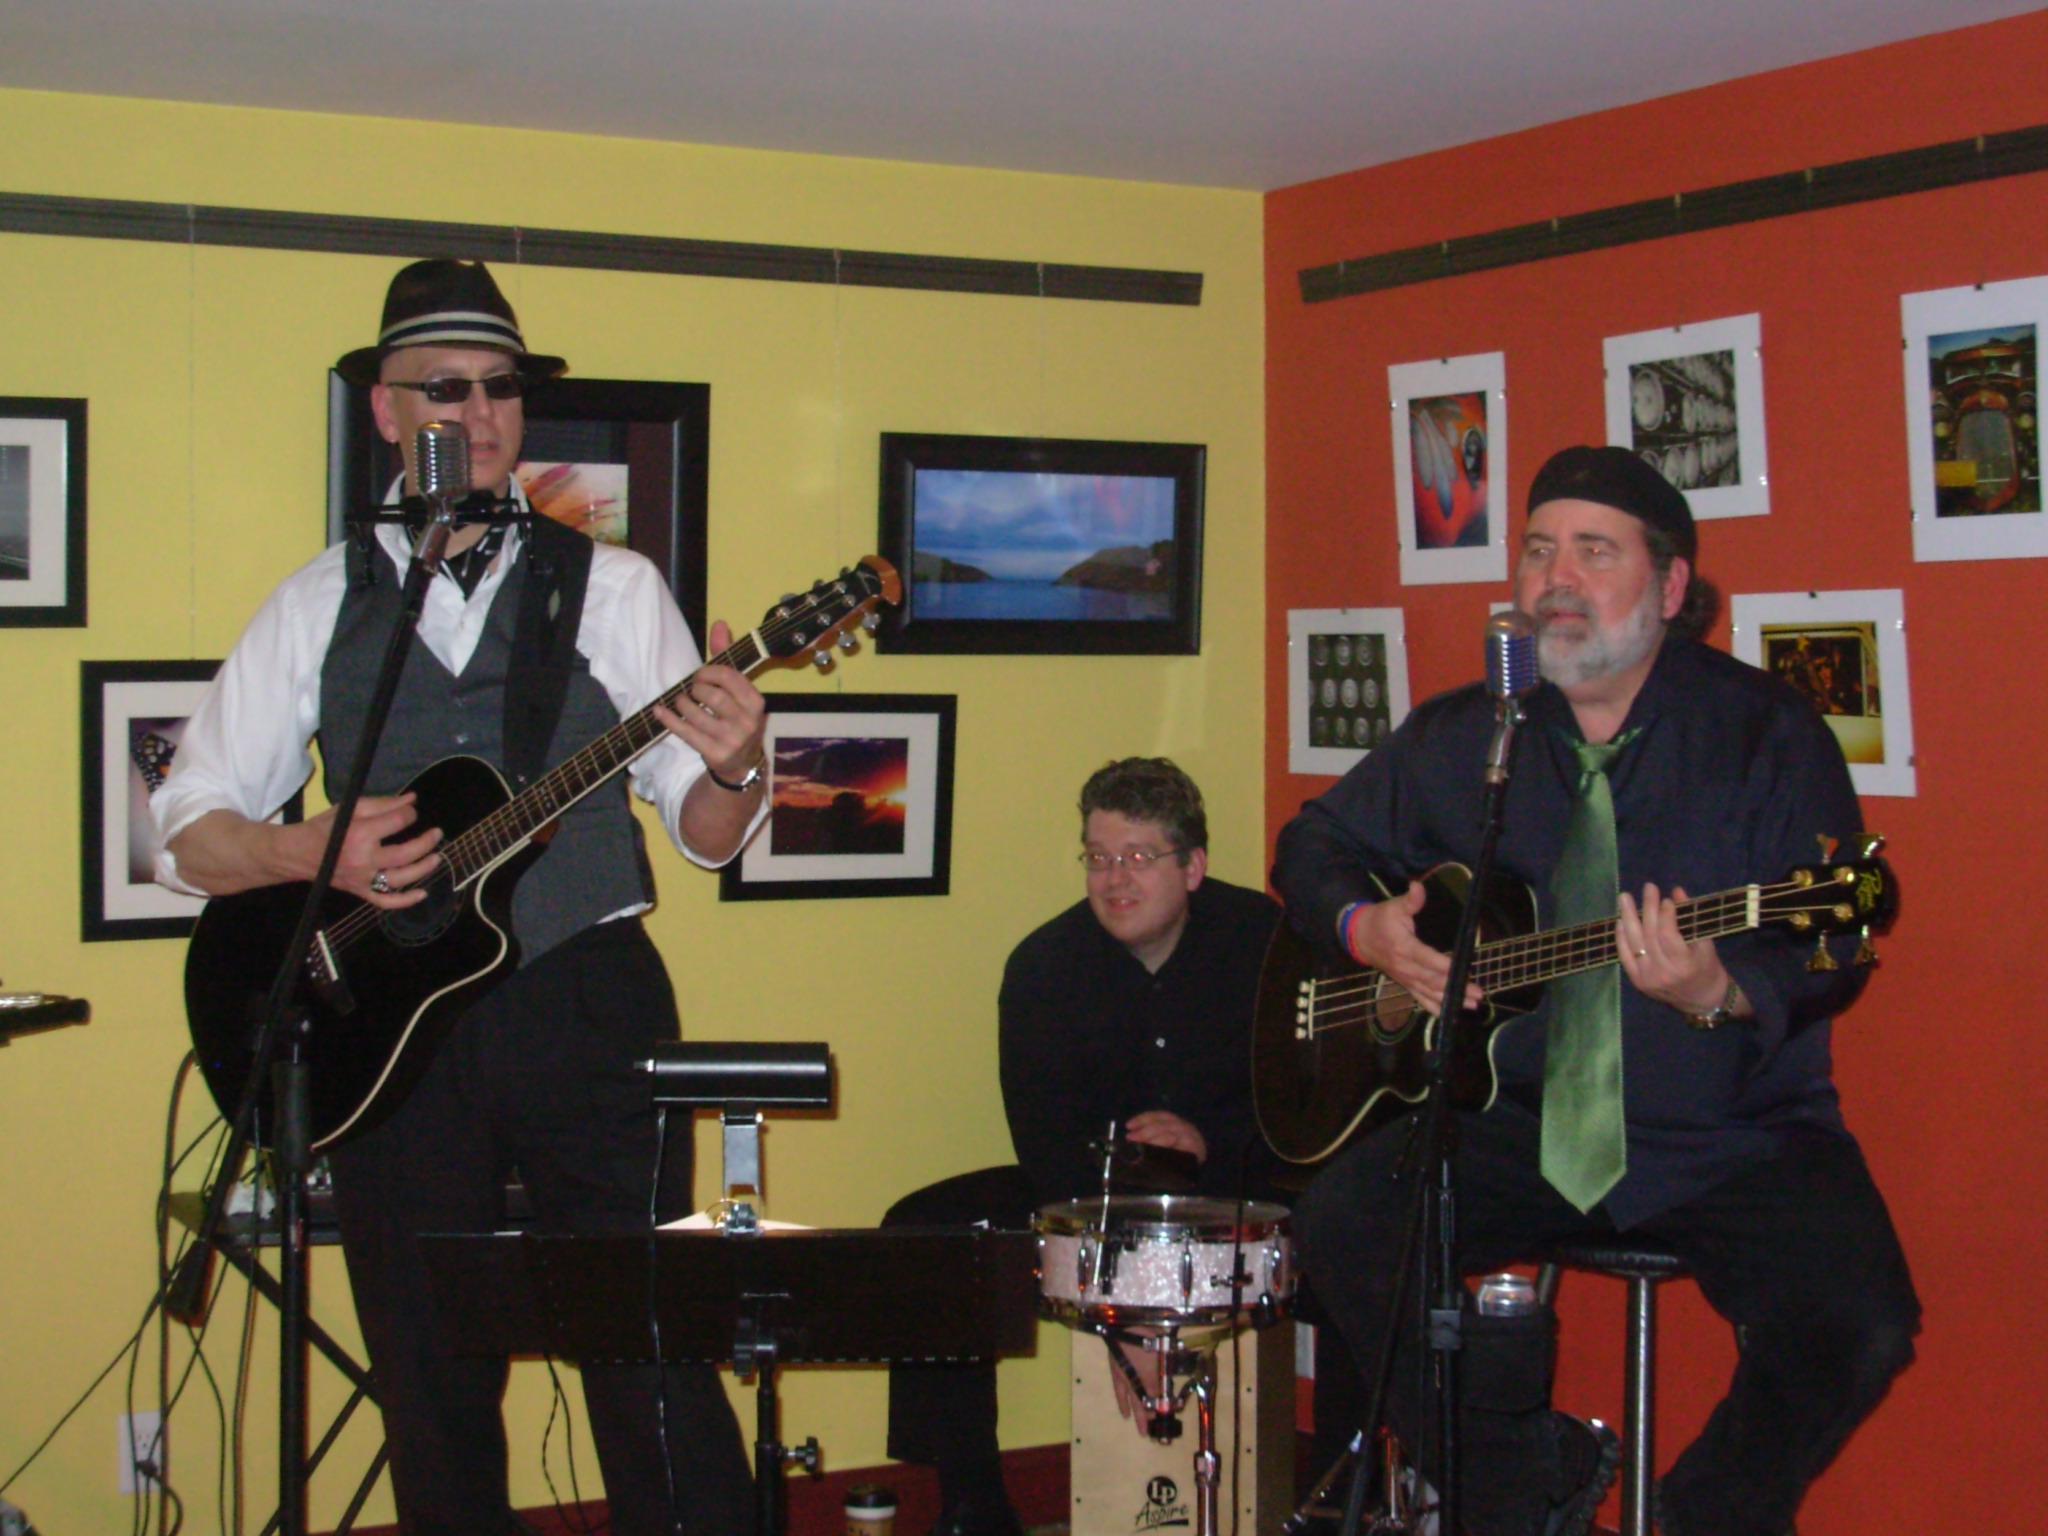 Acoustic music at Zeek's in Dillsburg
